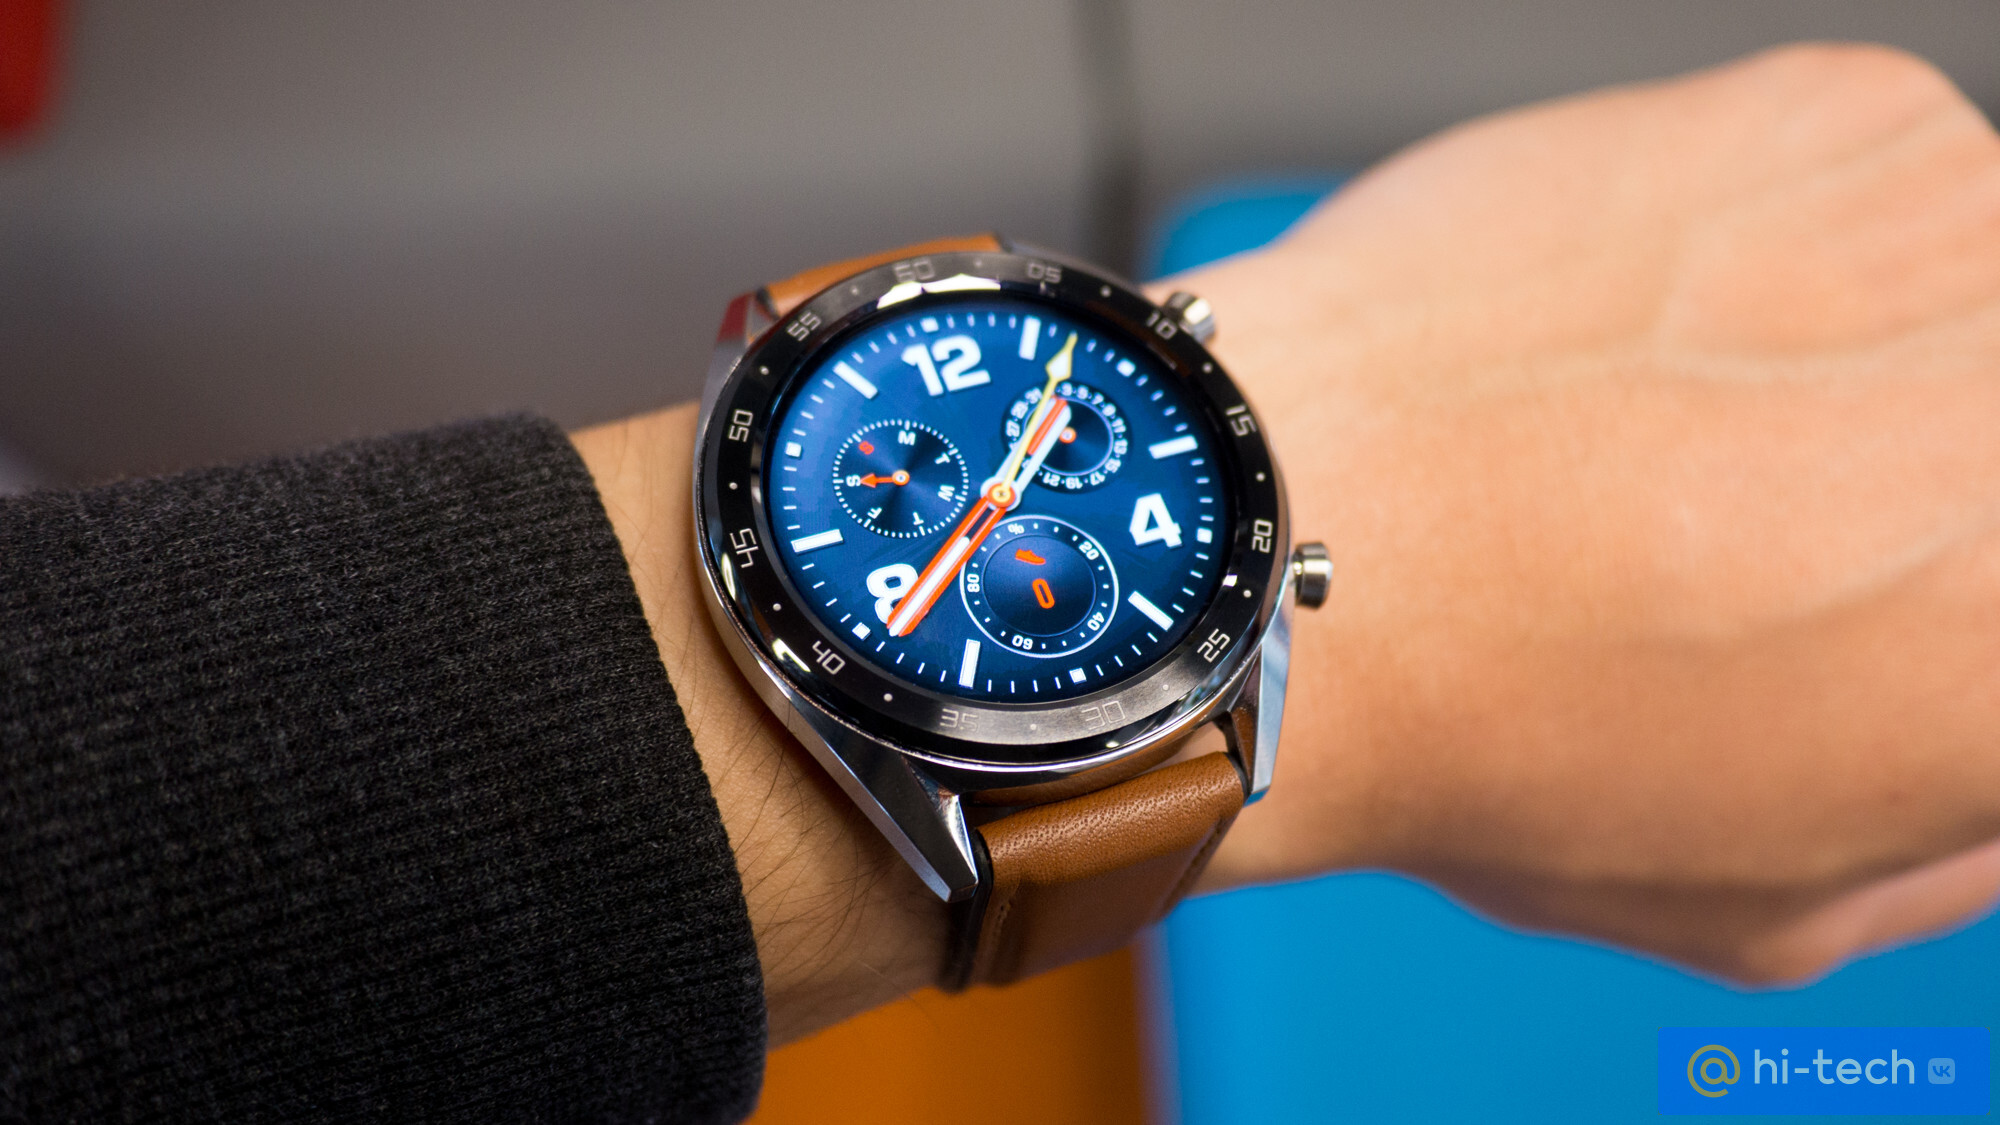 Huawei watch gt2 ремонтundefined. Huawei watch gt 1. Huawei watch gt 2 Classic 46 mm. Huawei watch gt 2 46mm. Huawei watch gt4.